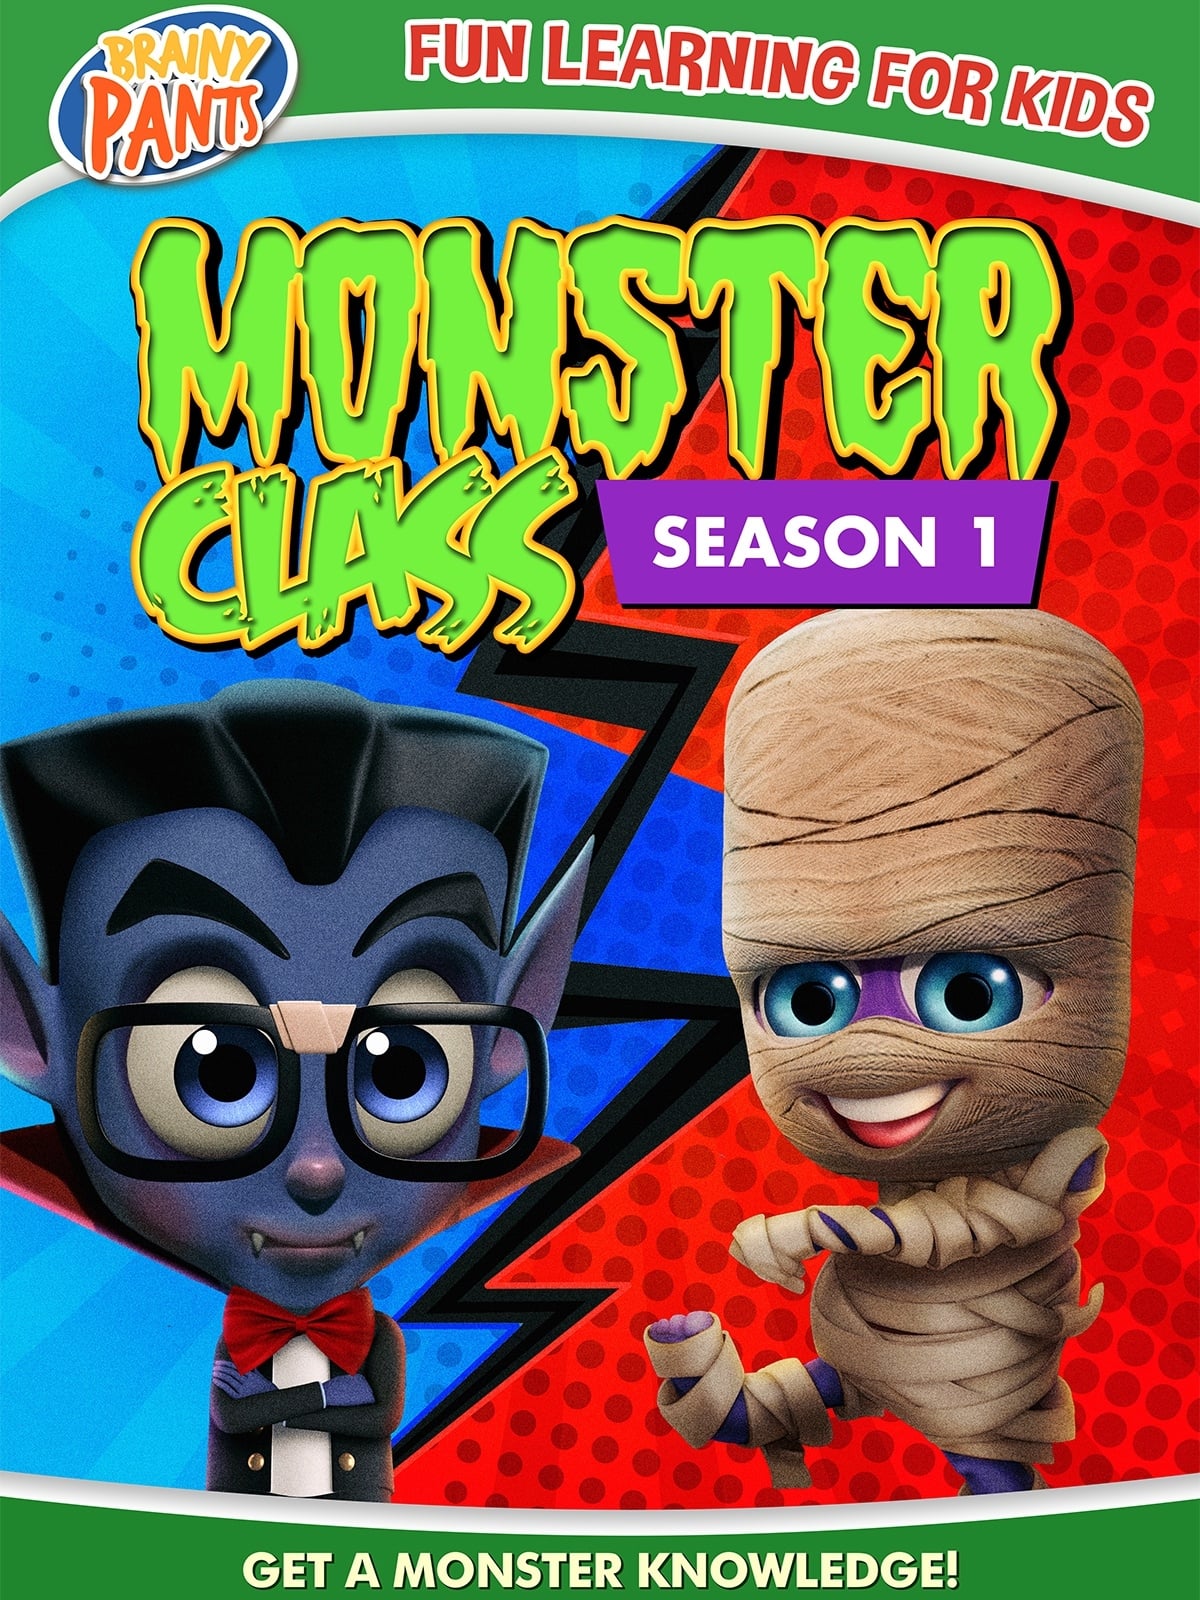 Monster Class Season 1